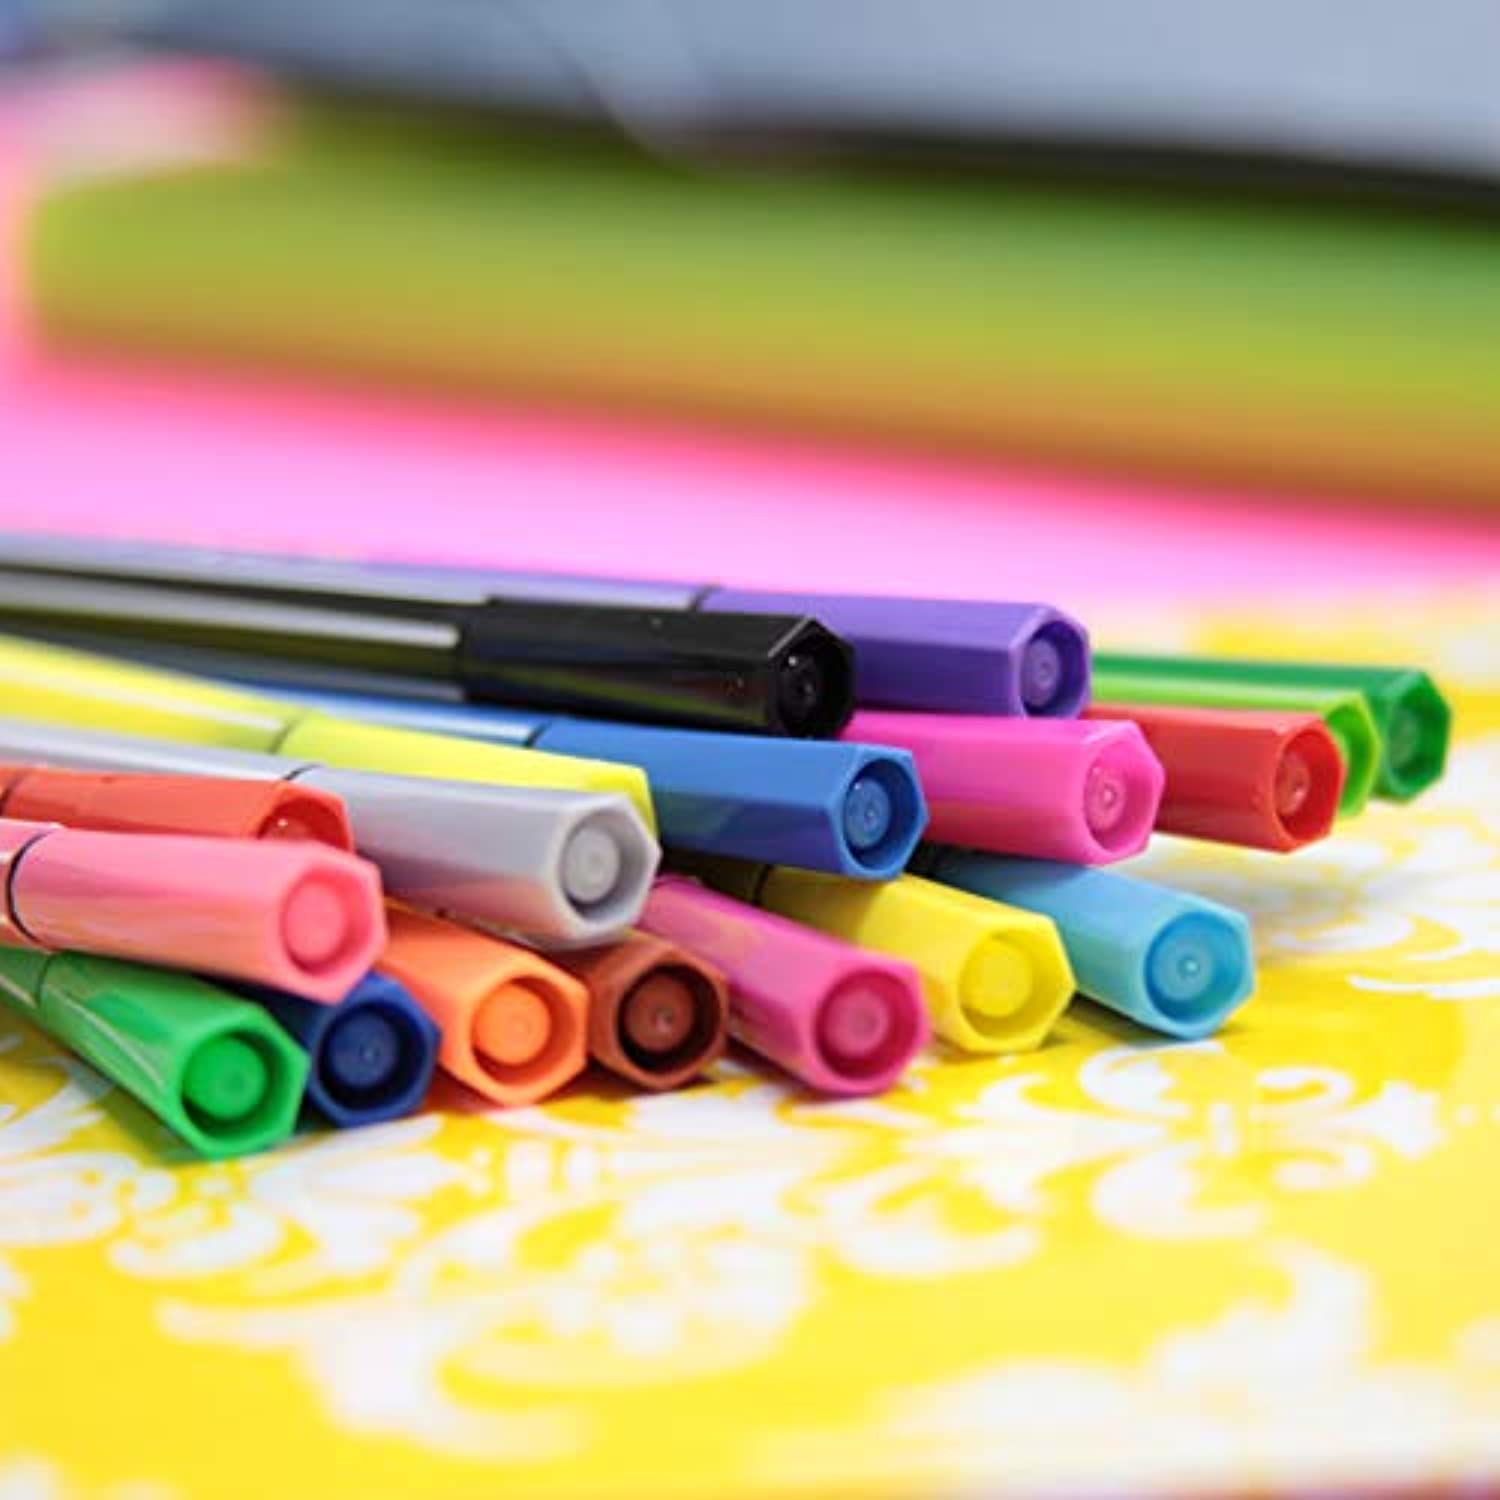 24 Color Washable Fiber Tip Pen Marker (24/Pack)